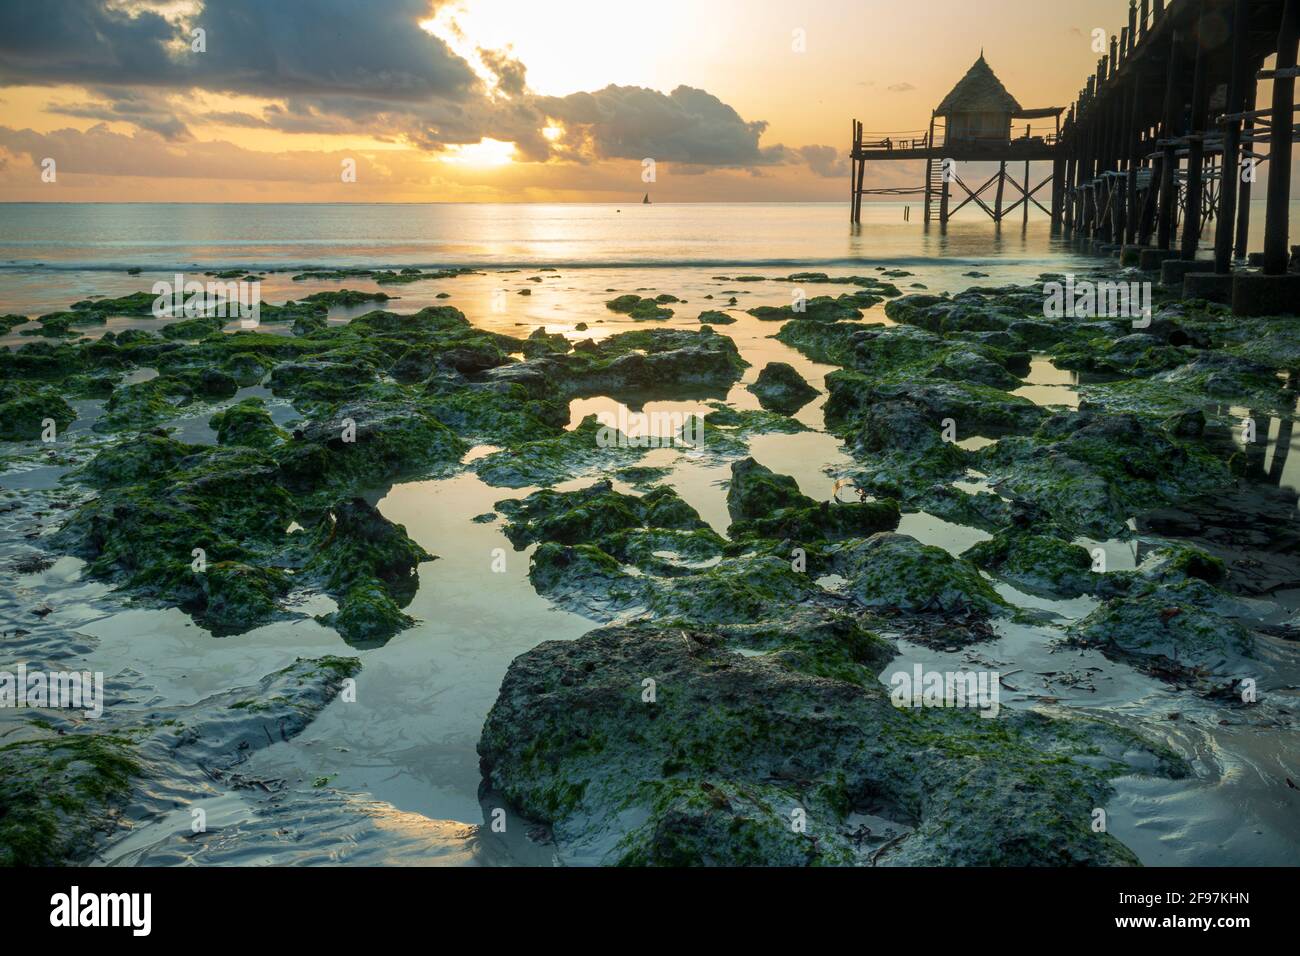 Hermoso amanecer y un puente de madera o embarcadero que conduce a un restaurante / Bar llamado Sansibar en la playa Jambiani, Zanzíbar, Tanzania, África en la marea baja con rocas verdes visibles en el agua Foto de stock